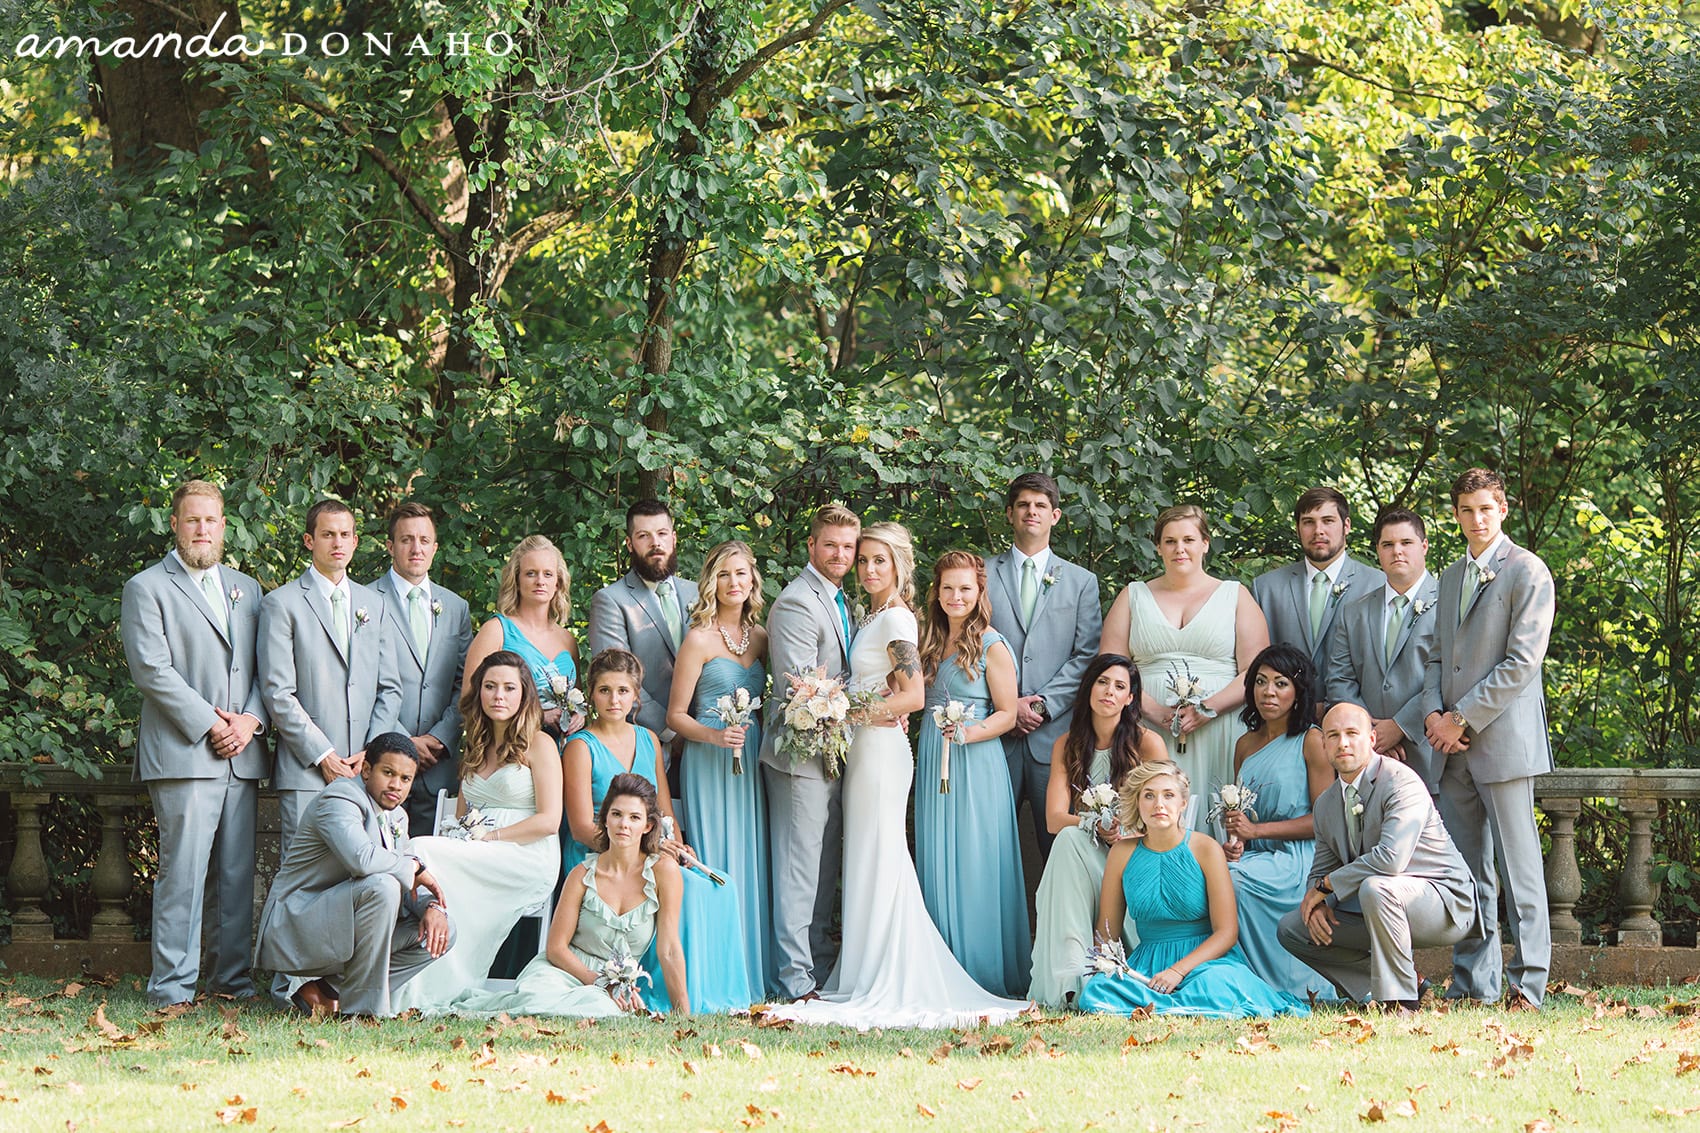 Cincinnati Wedding Photographers